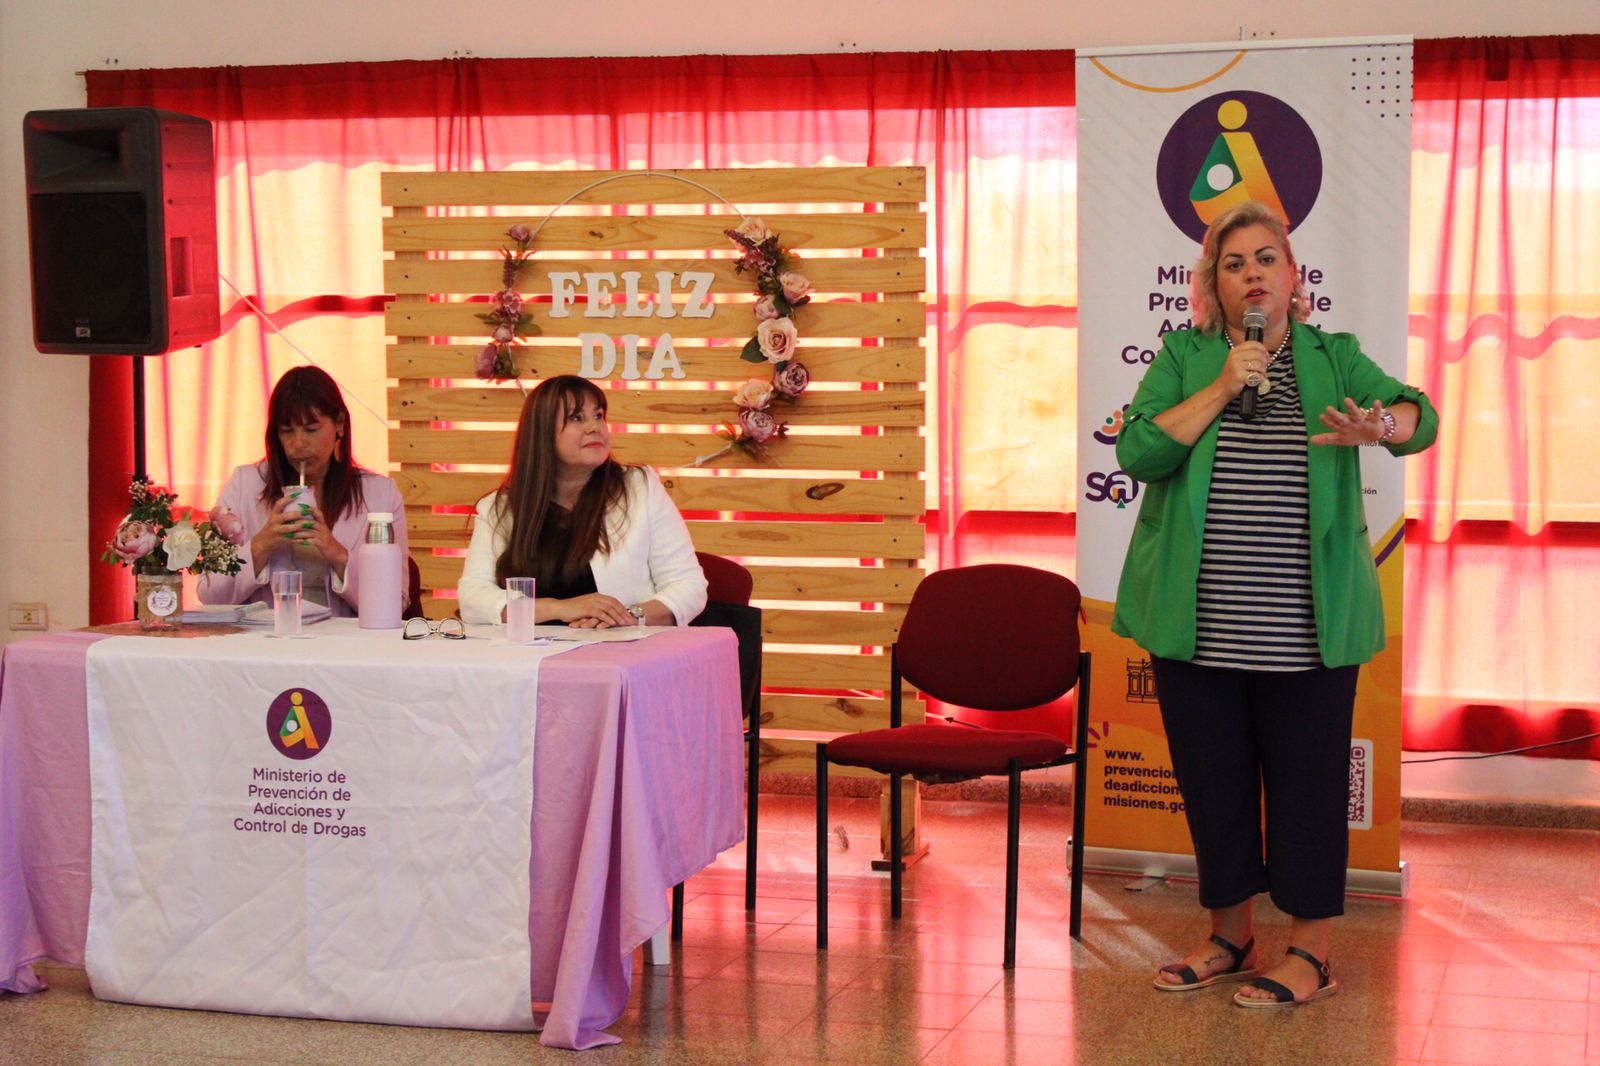 Las mujeres del ministerio de Prevención de Adicciones debatieron sobre roles y el derecho a la igualdad